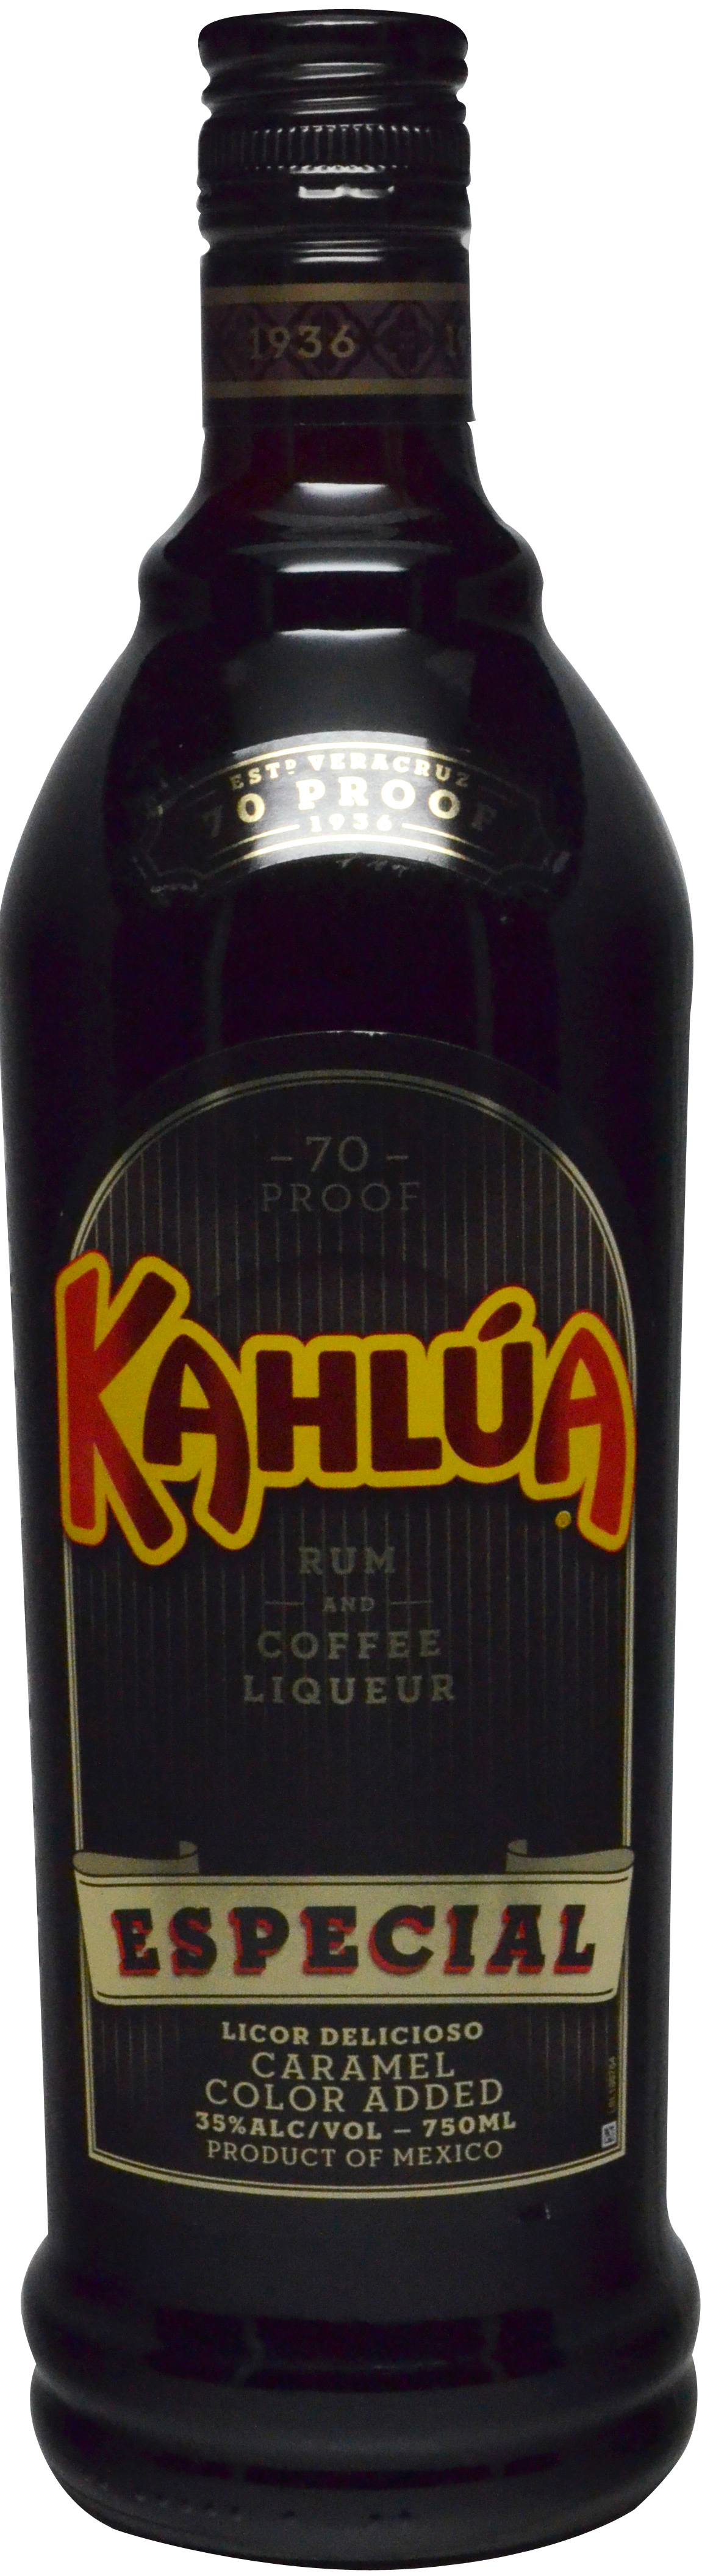 Kahlua Especial Coffee Liqueur